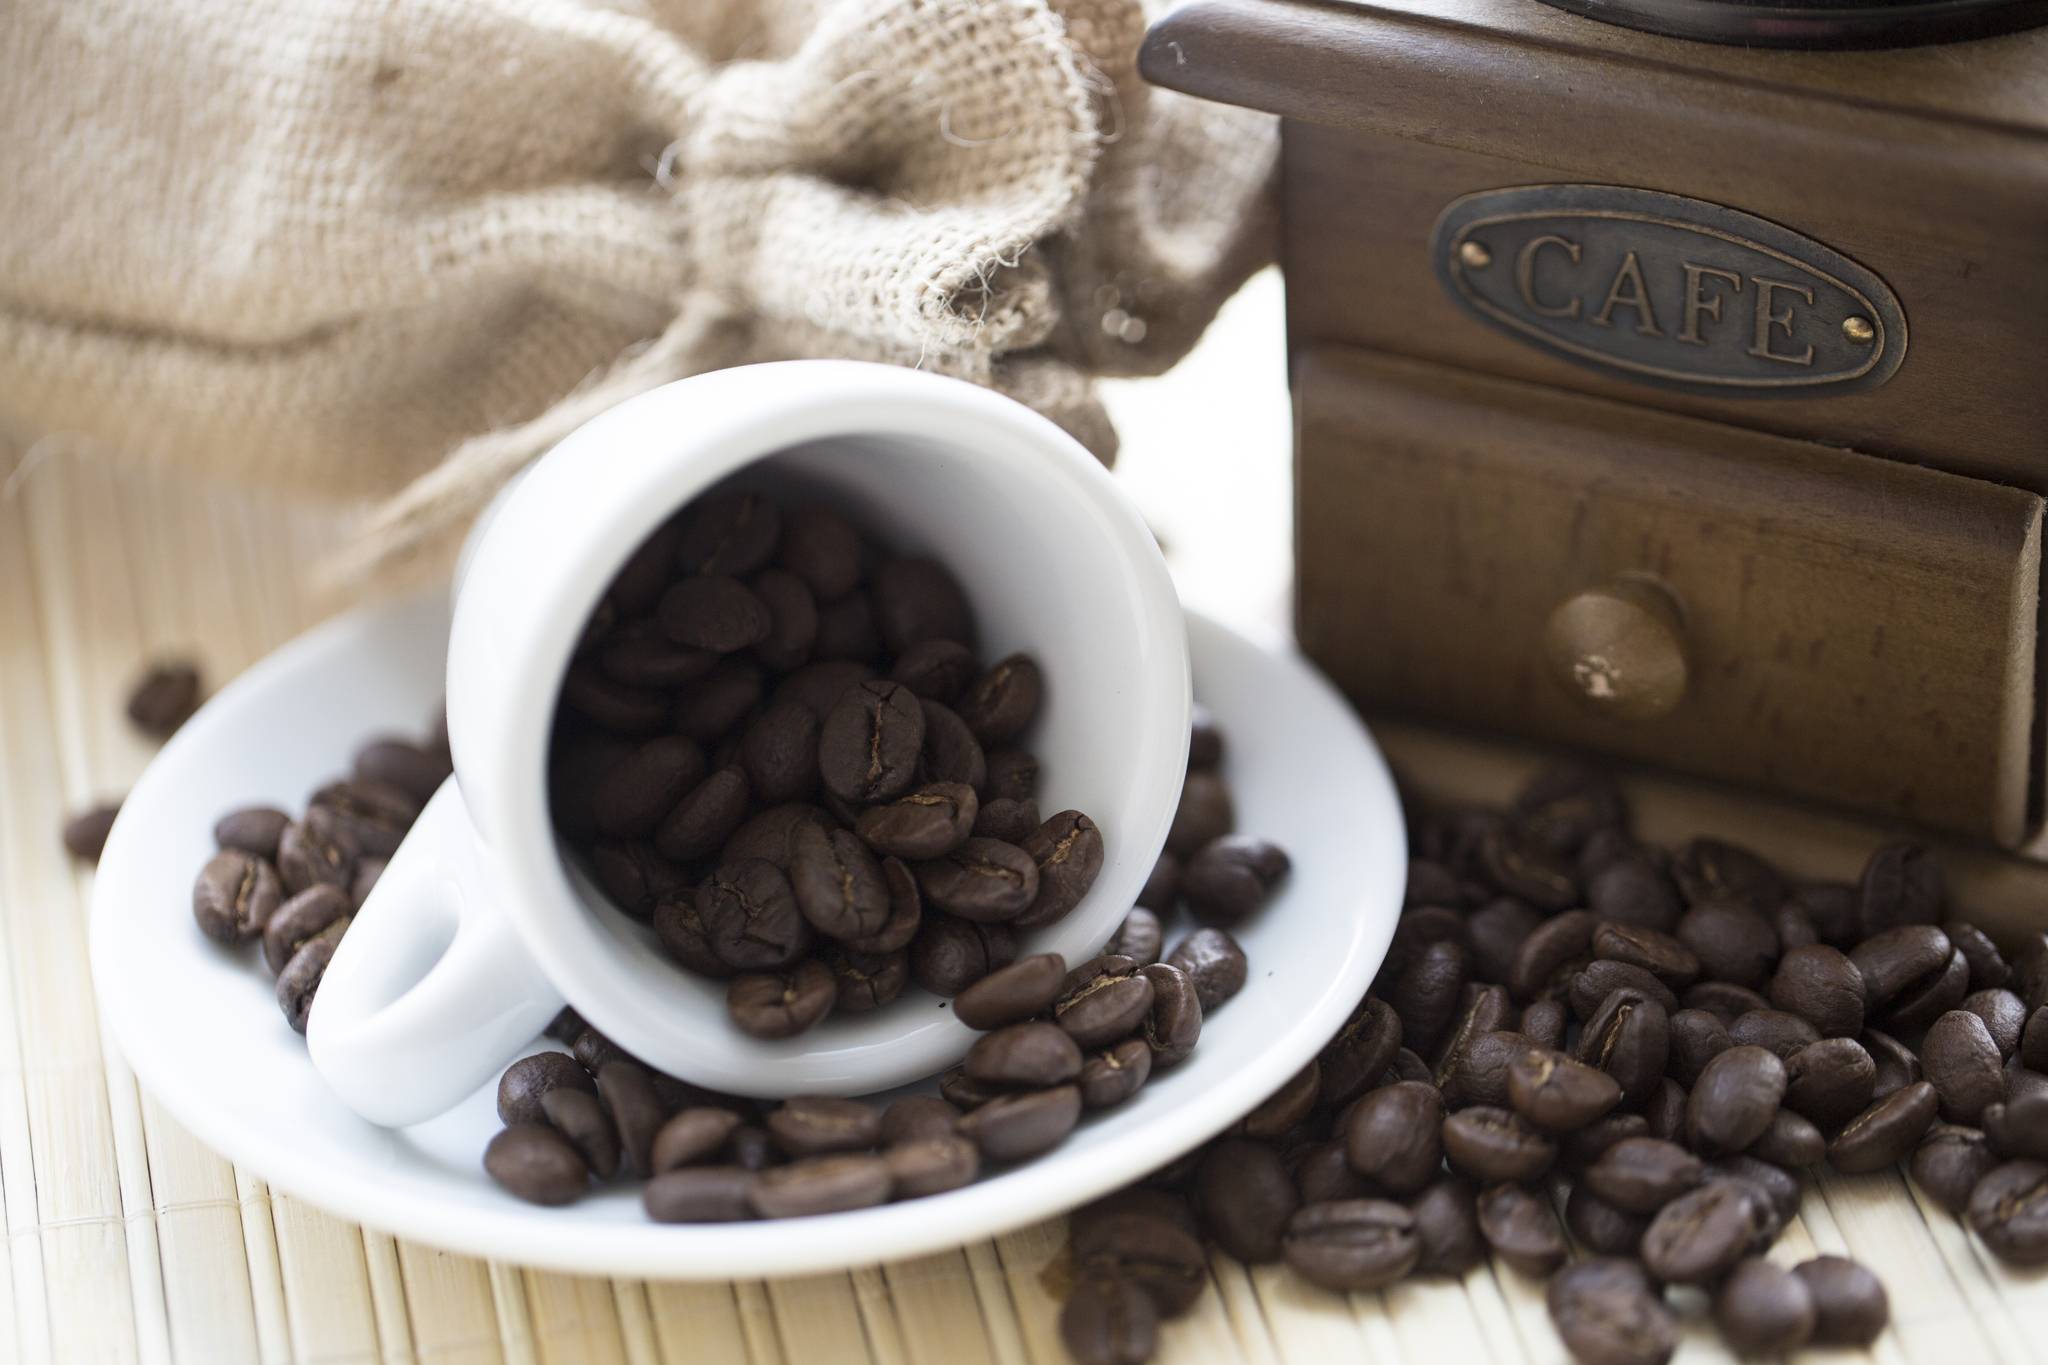 Можно ли пить кофе при диабете?